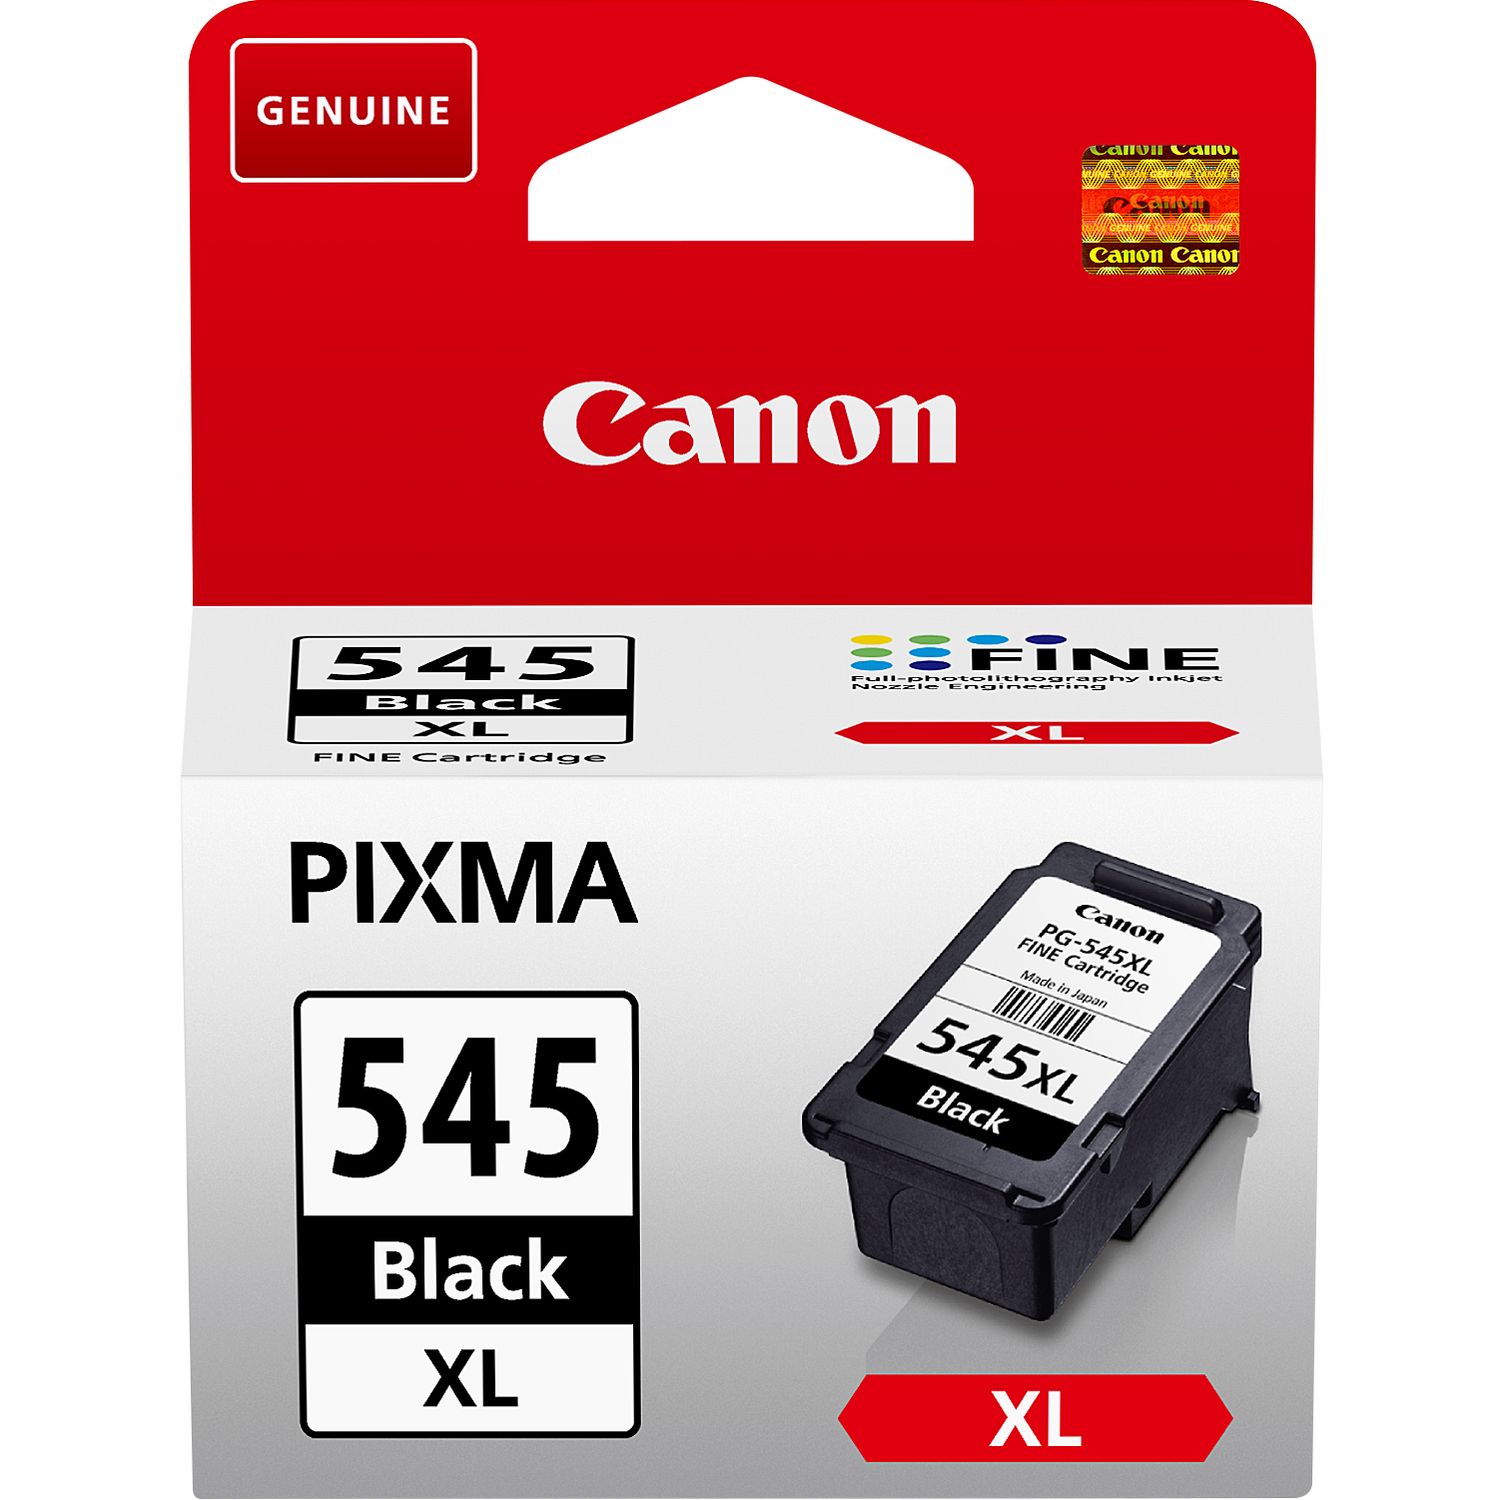 Cartouches d'encre pour Canon Pixma TS205 TS305 TS3150 TS3151 black/color  Noir : : Informatique